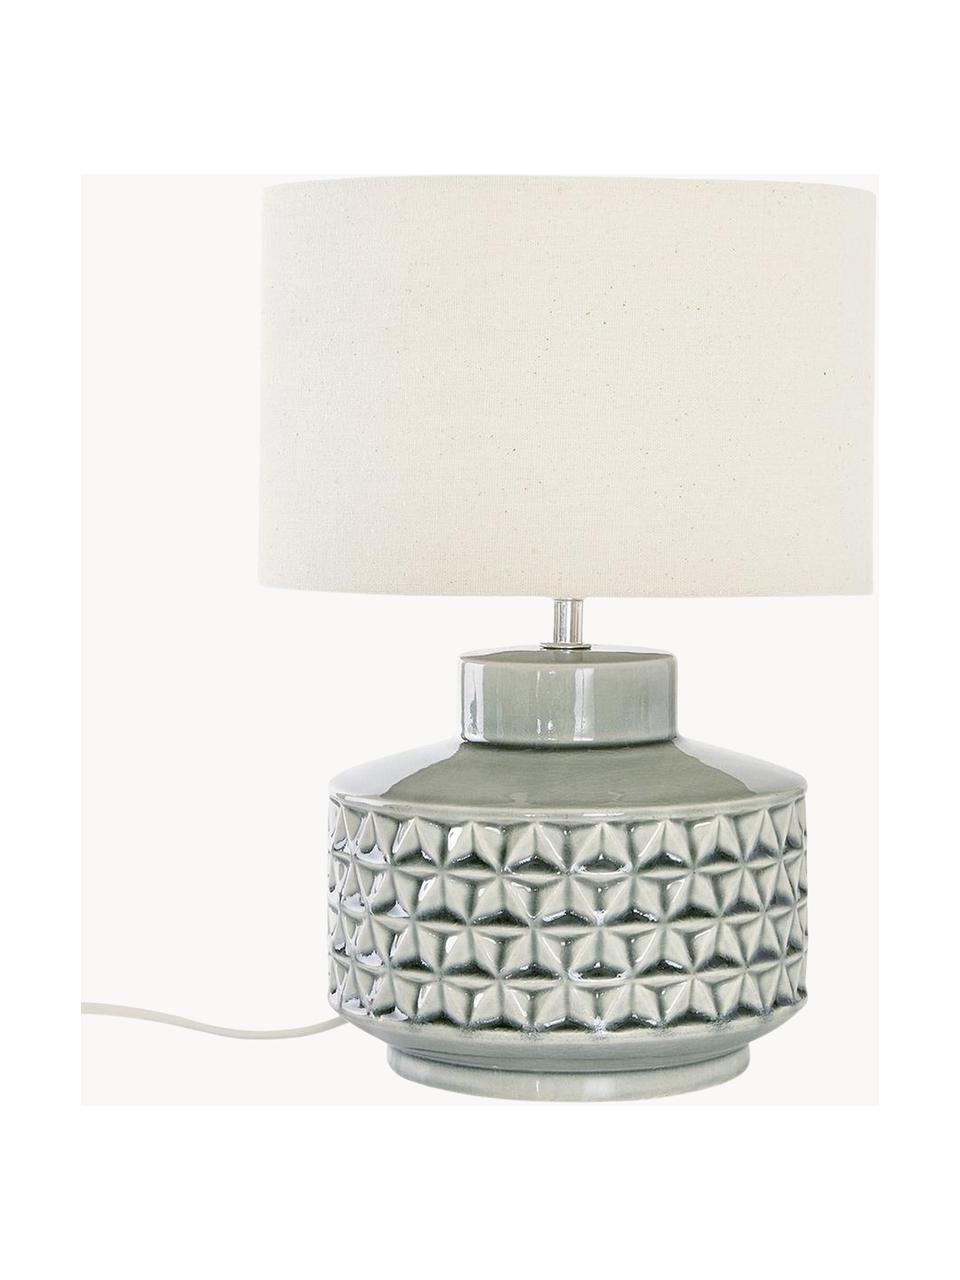 Kleine Keramik-Tischlampe Monica mit Leinenschirm, Lampenschirm: Leinen, Lampenfuß: Keramik, Beige, Grau, Ø 23 x H 33 cm